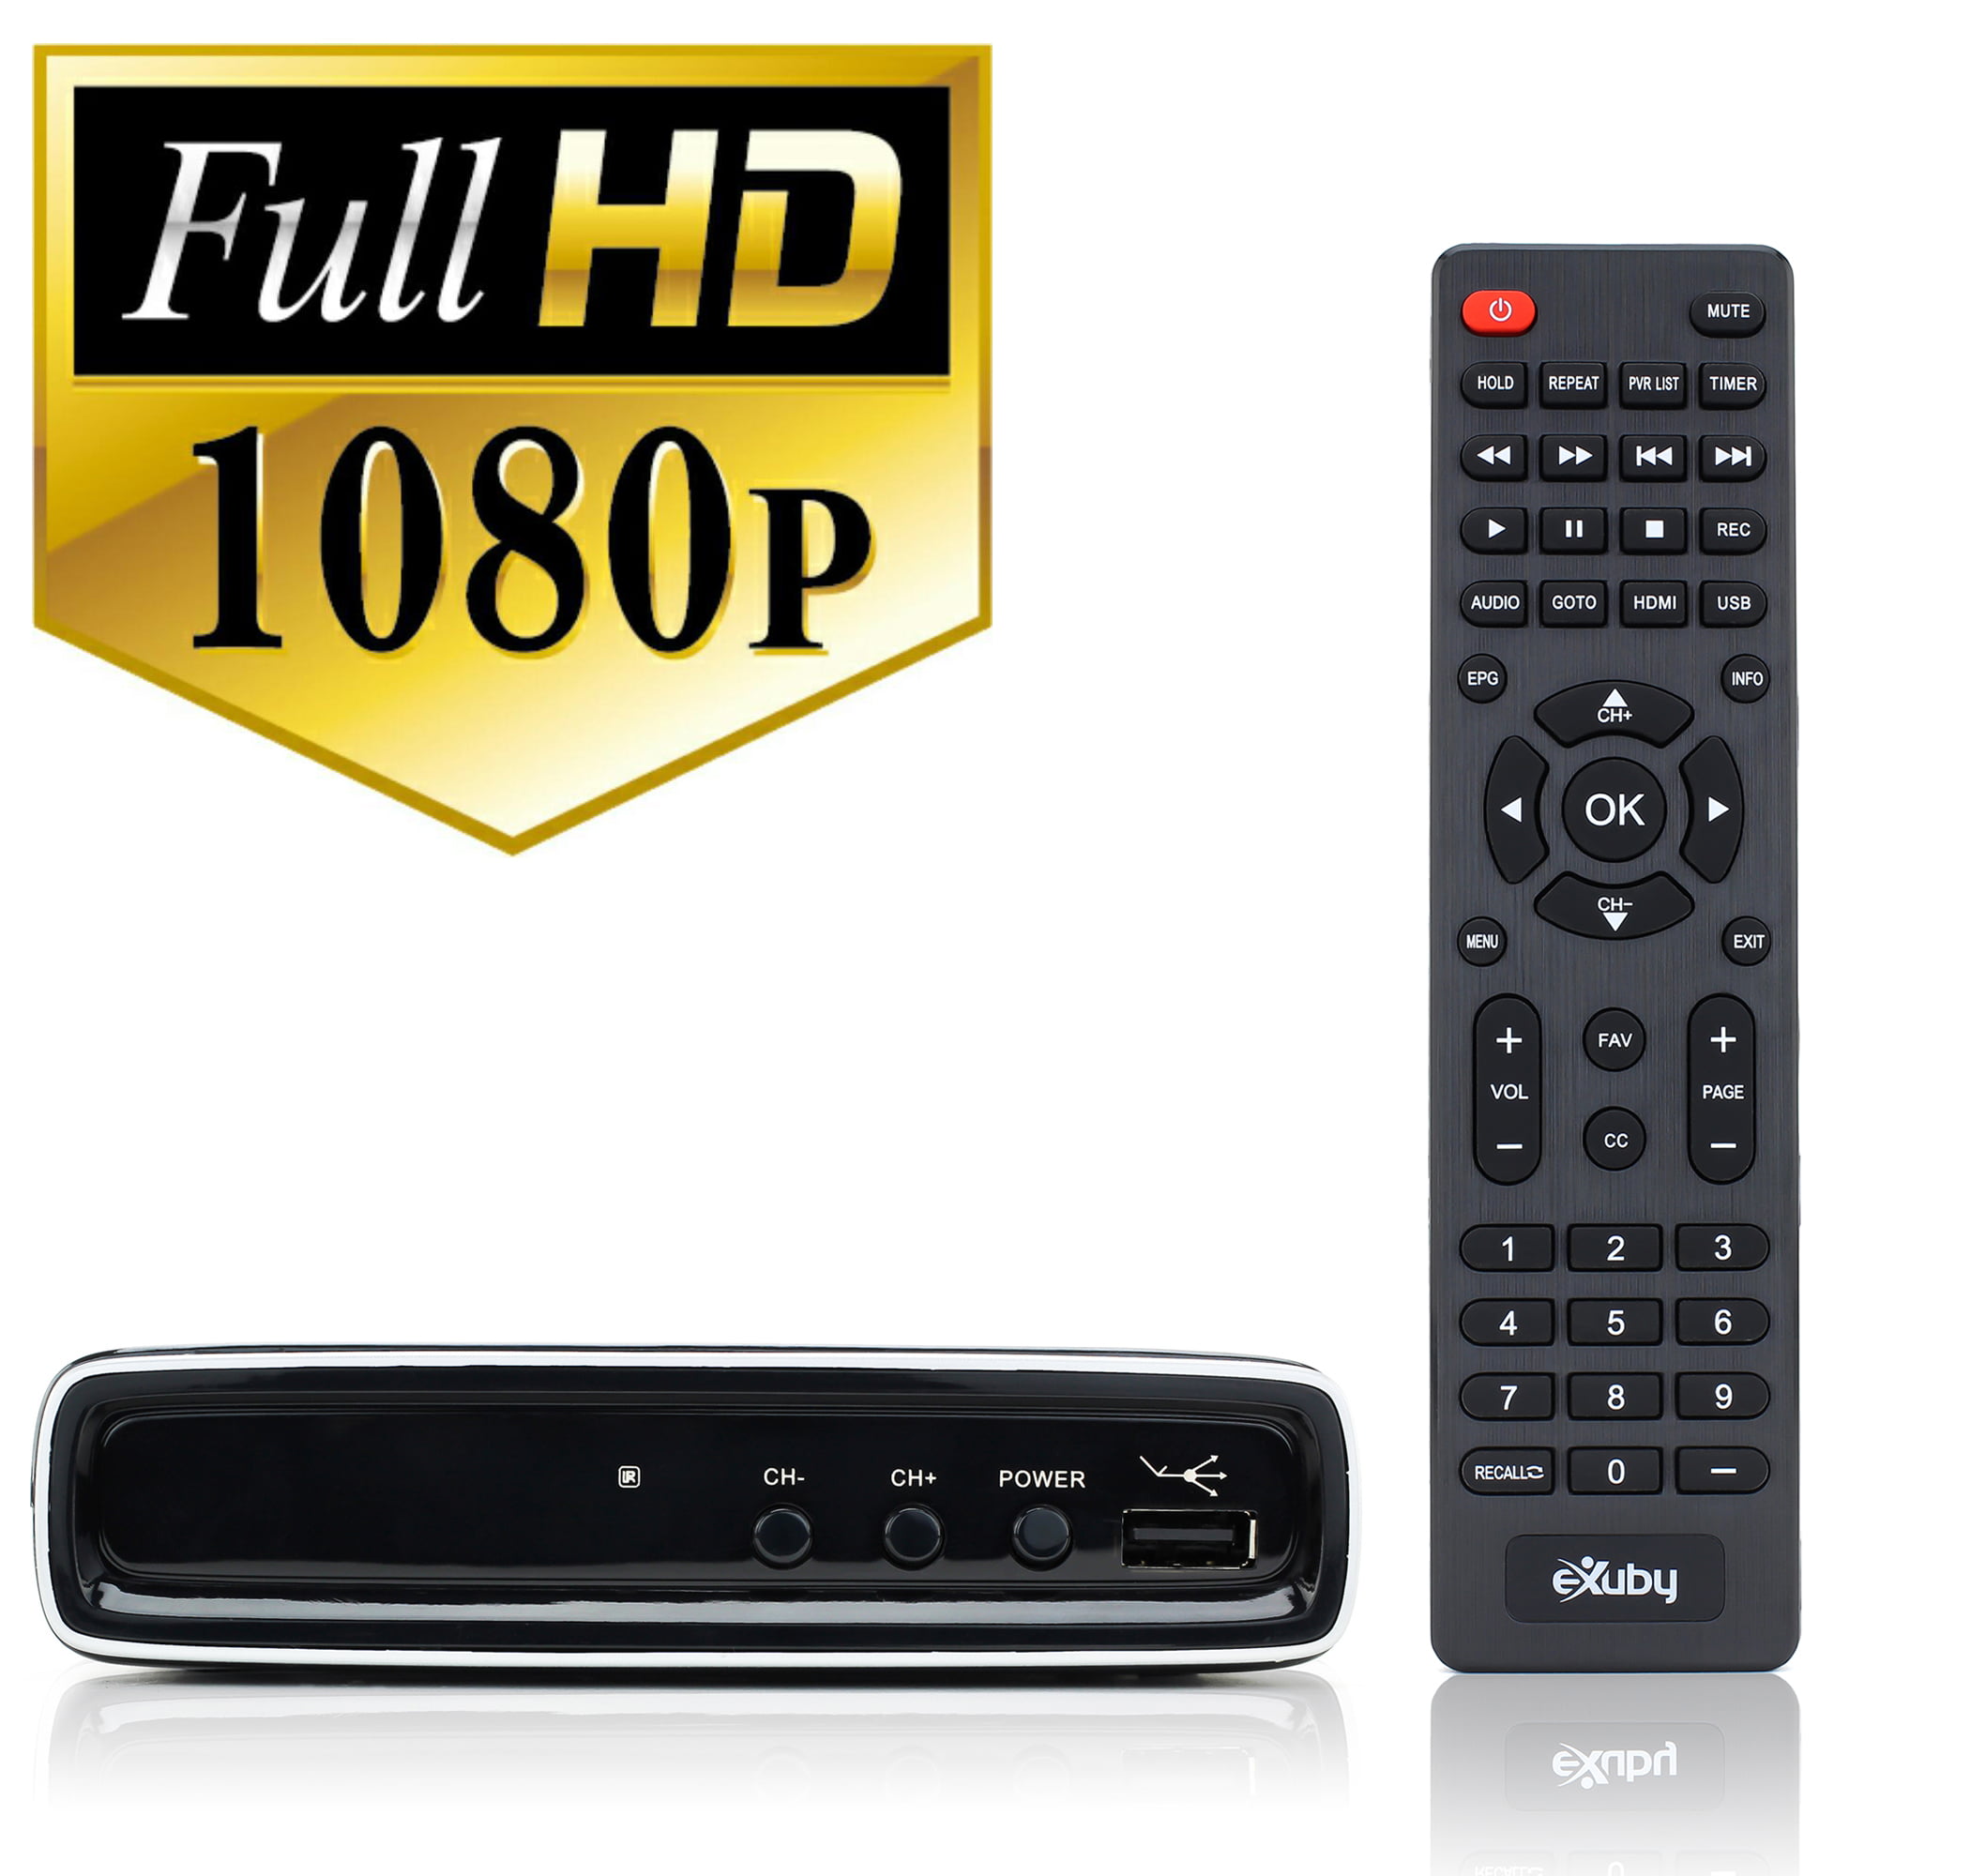  eXuby Caja convertidora digital para TV, antena, cable HDMI y  RCA, paquete completo para ver, grabar canales HD grabación instantánea o  programada, TV HD 1080P, salida HDMI y guía de programas